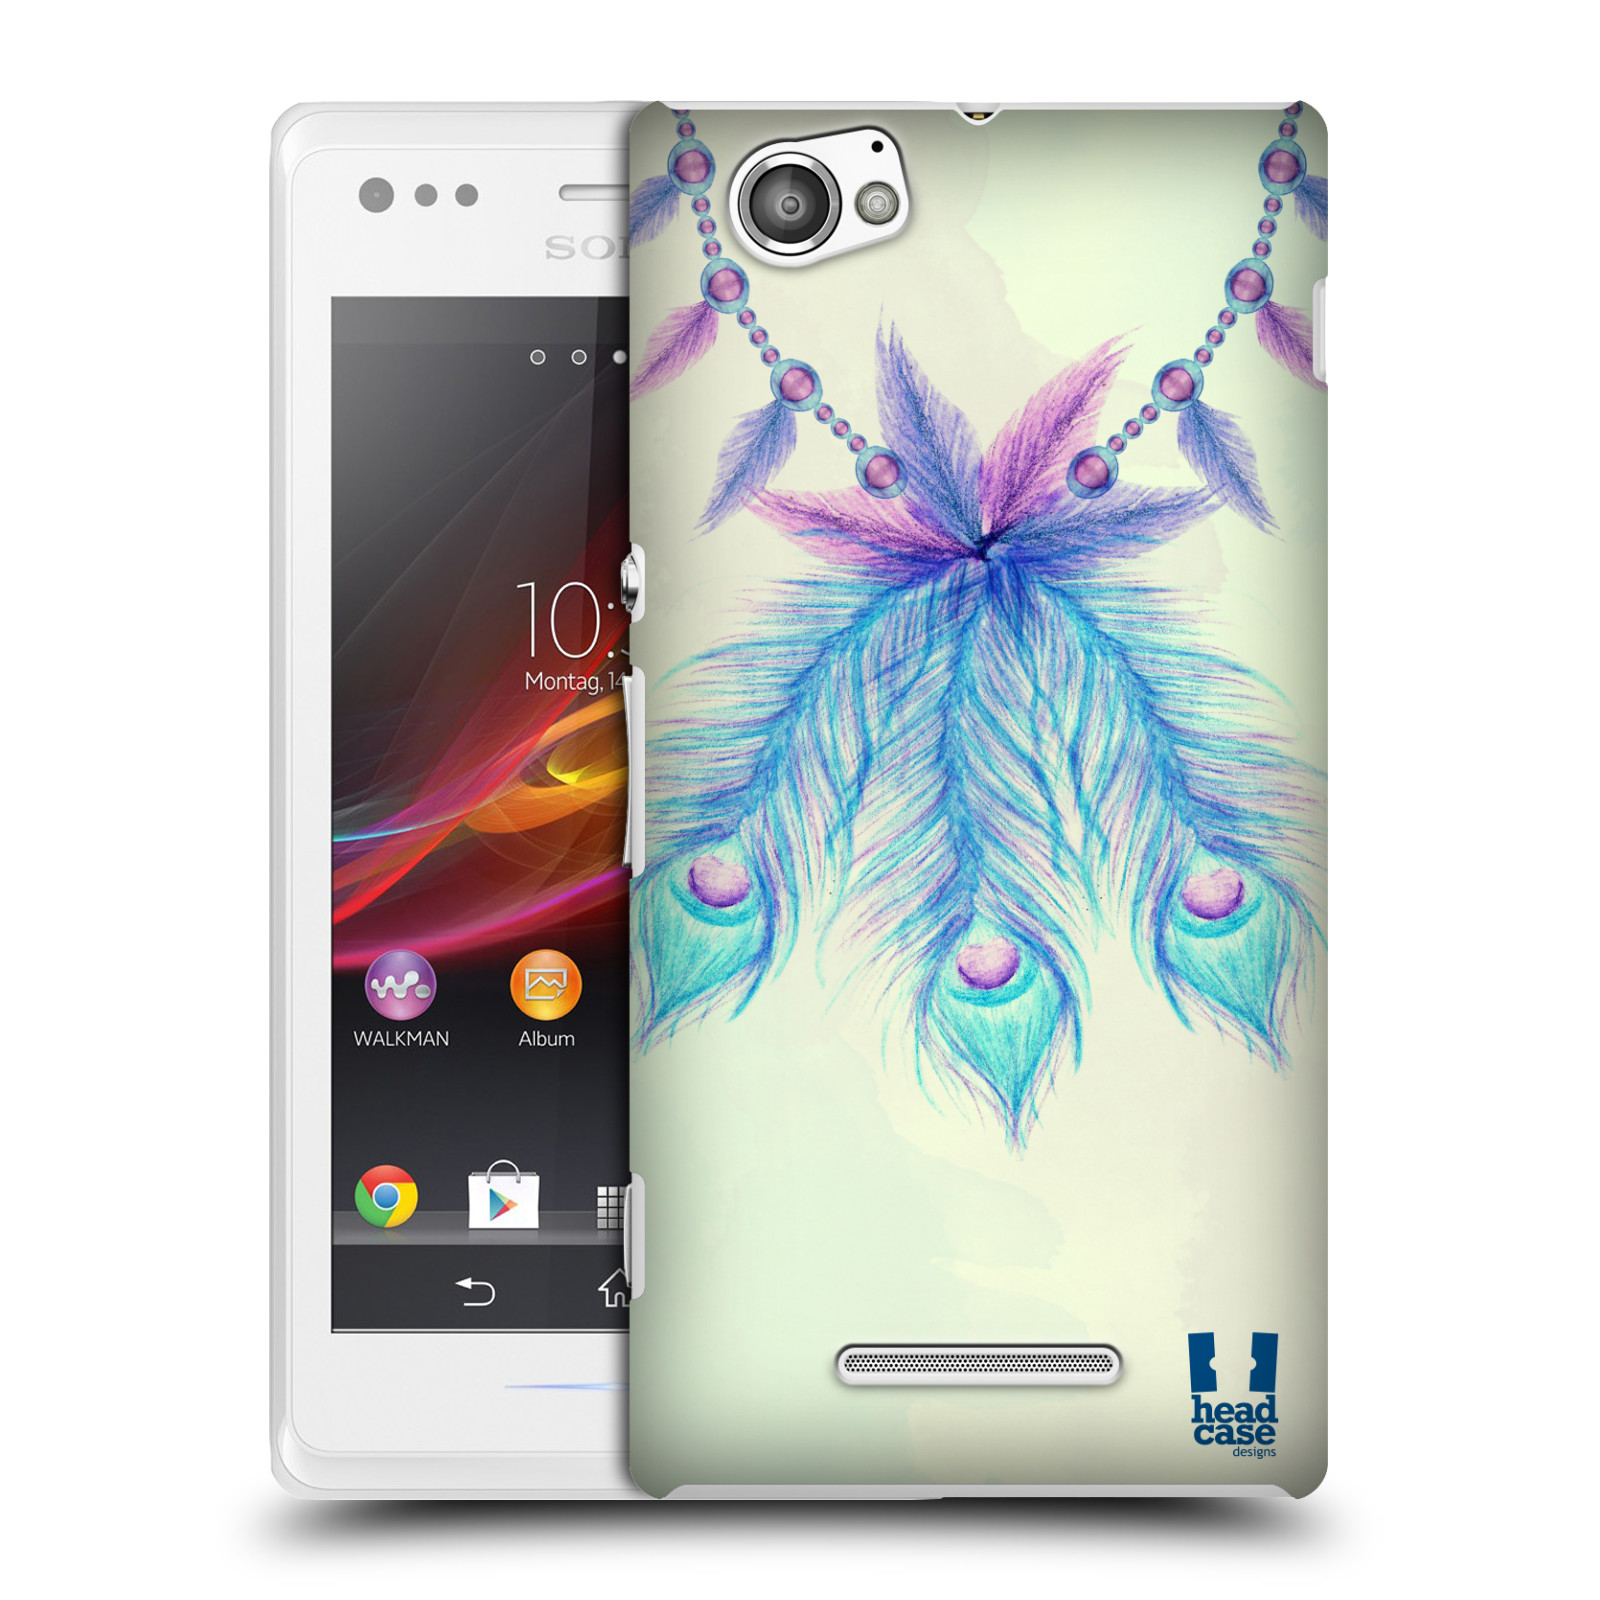 HEAD CASE plastový obal na mobil Sony Xperia M vzor Paví pírka barevná MODRÁ ŠTĚSTÍ